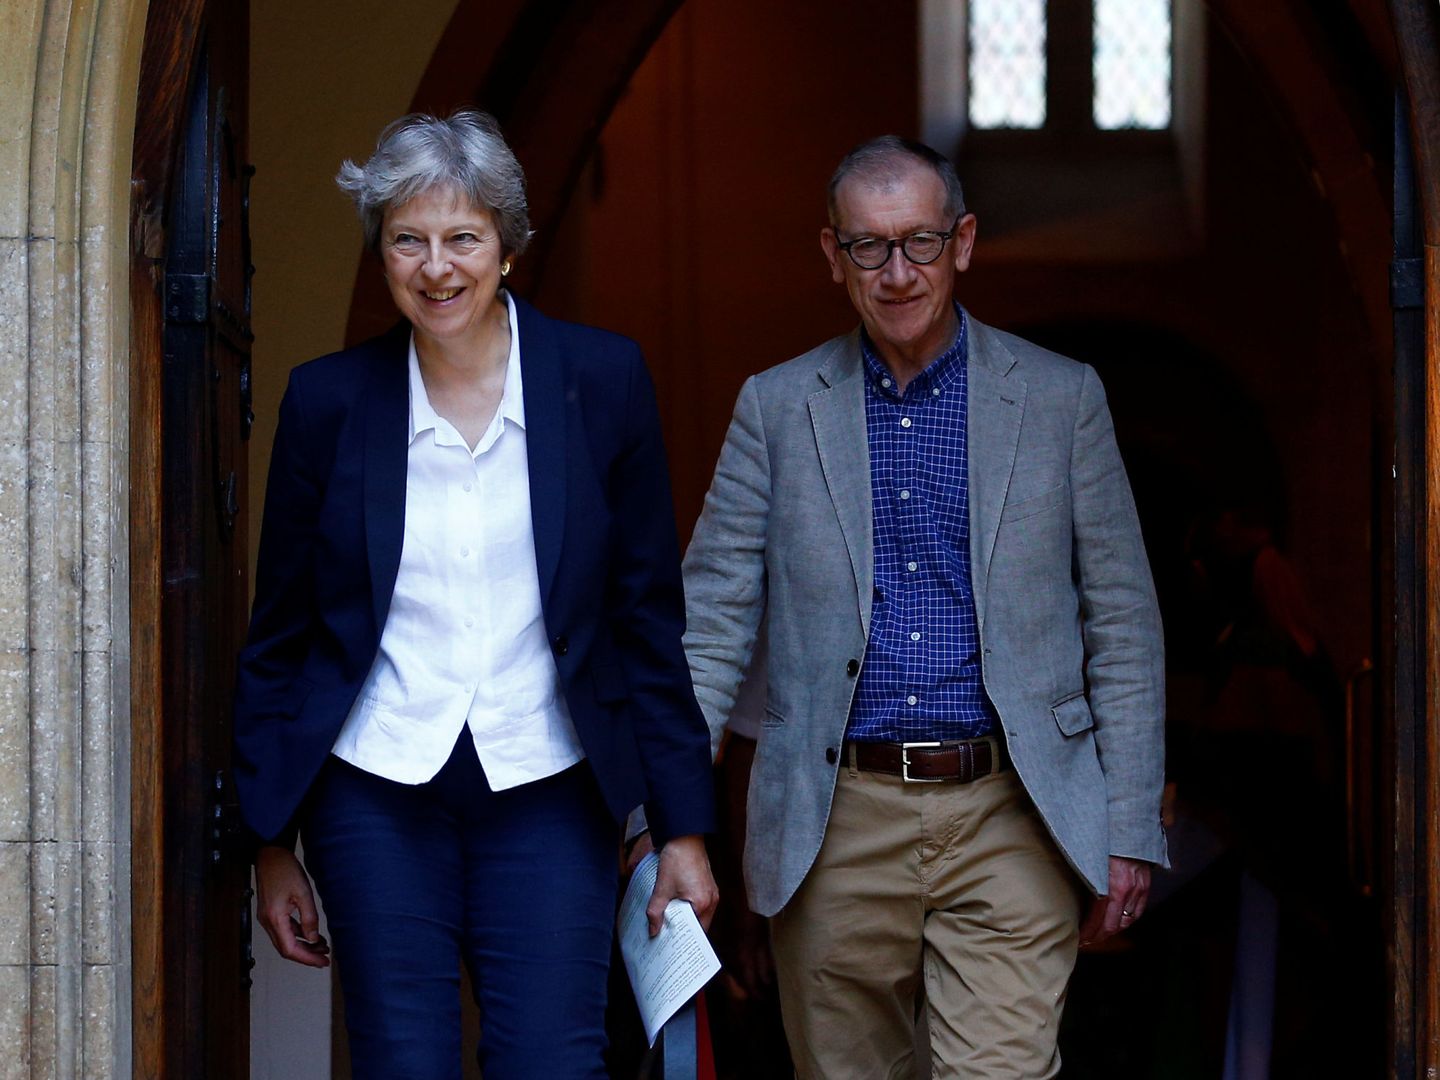 La primera ministra Theresa May y su esposo Philip salen de una iglesia tras asistir a misa en Sonning, ayer, 8 de julio de 2018. (Reuters)